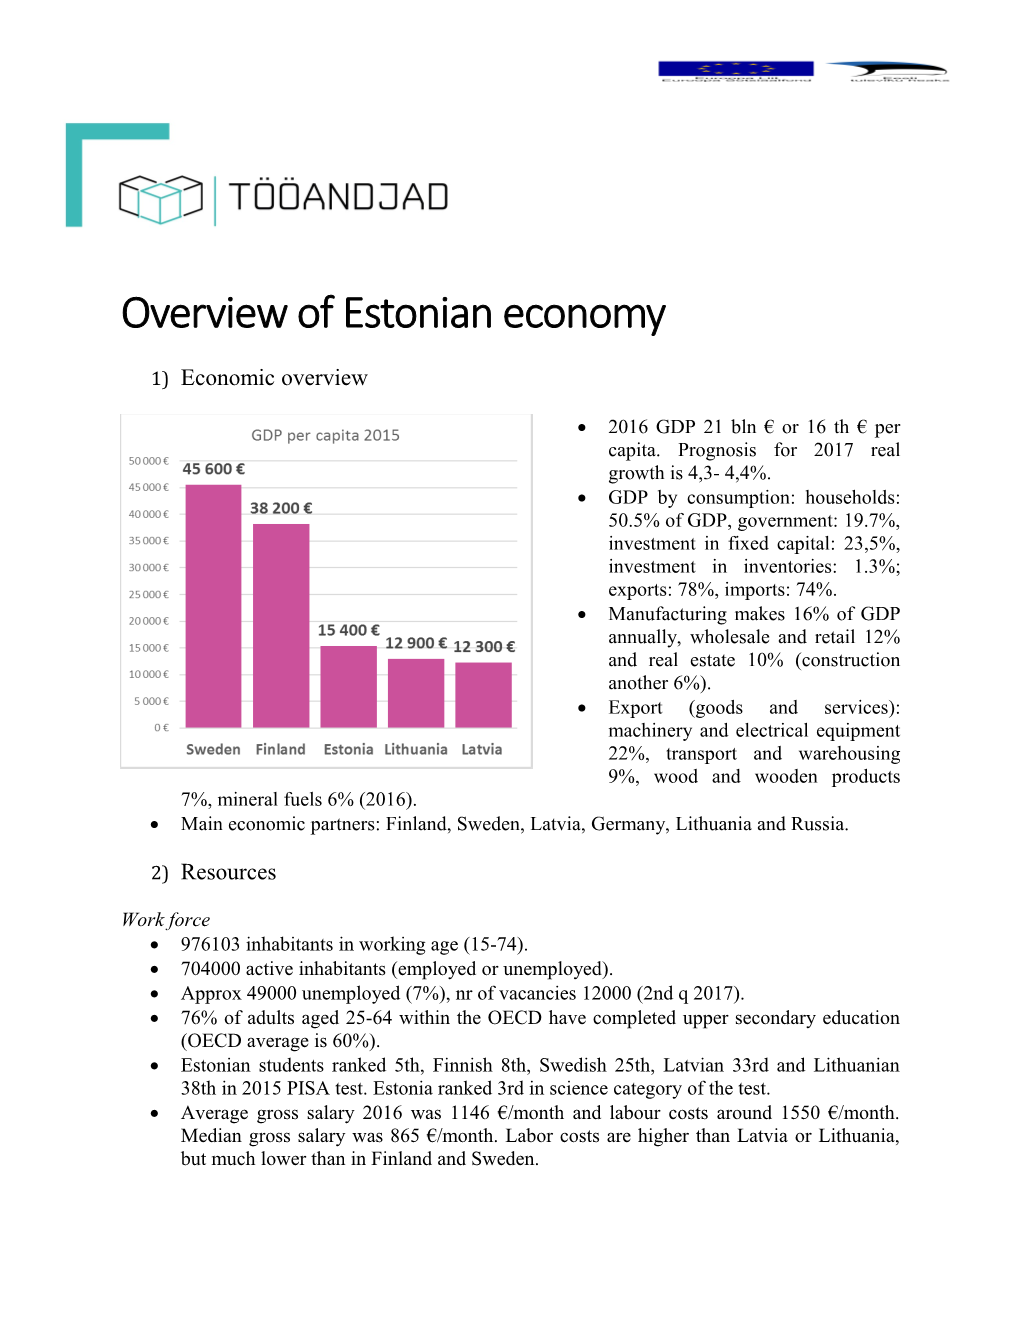 Overview of Estonian Economy